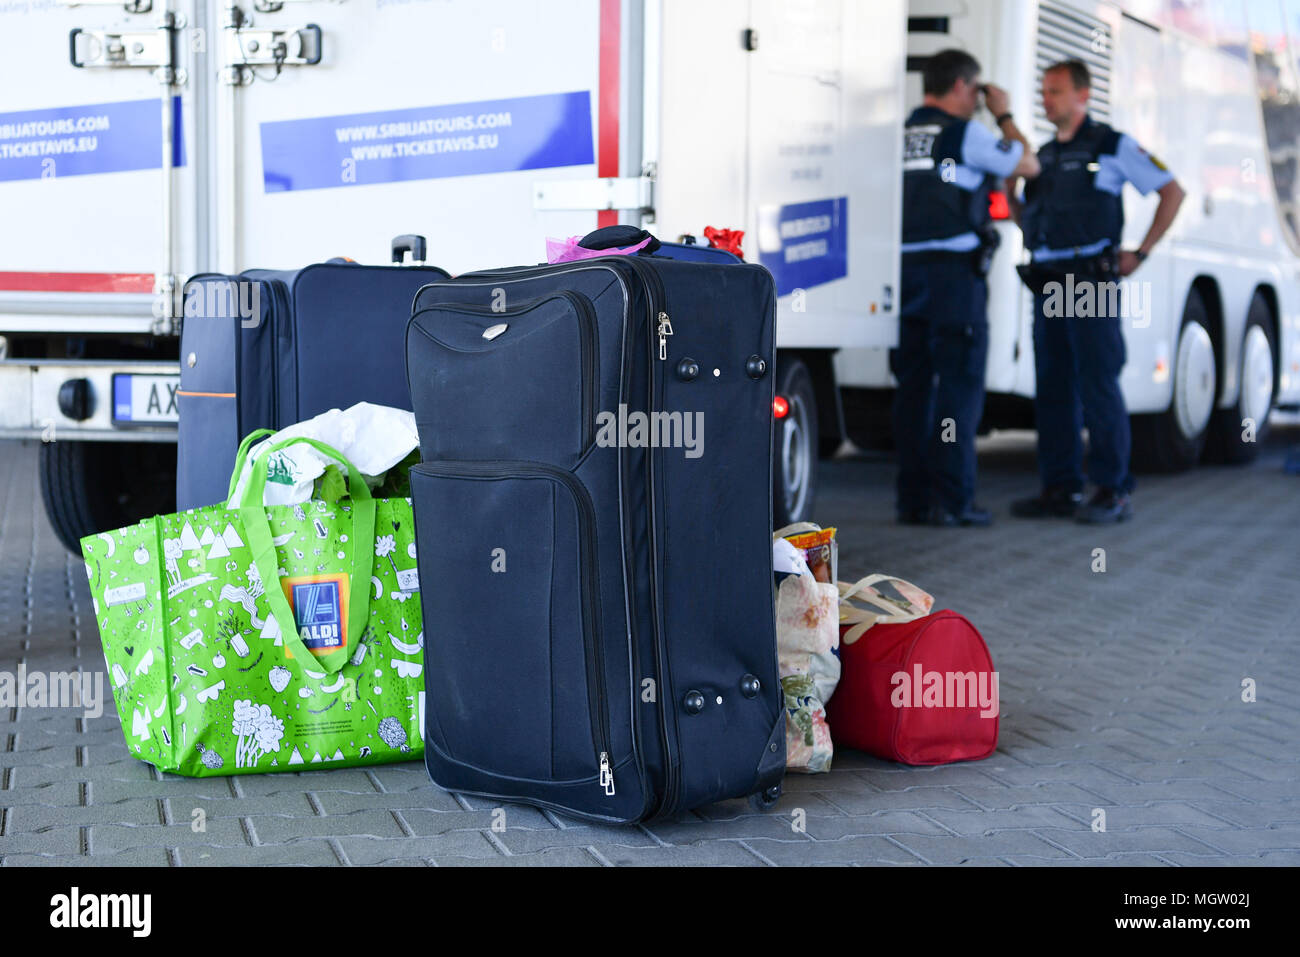 27 April 2018, Deutschland, Mannheim: Polizei steht hinter einem Stapel der  Koffer in der Mannheimer Busbahnhof. Gegenstand der Polizei Inspektion war  ein Fall von Dokumentenfälschung und falsche Identität. Foto: Uwe  Anspach/dpa Stockfotografie -